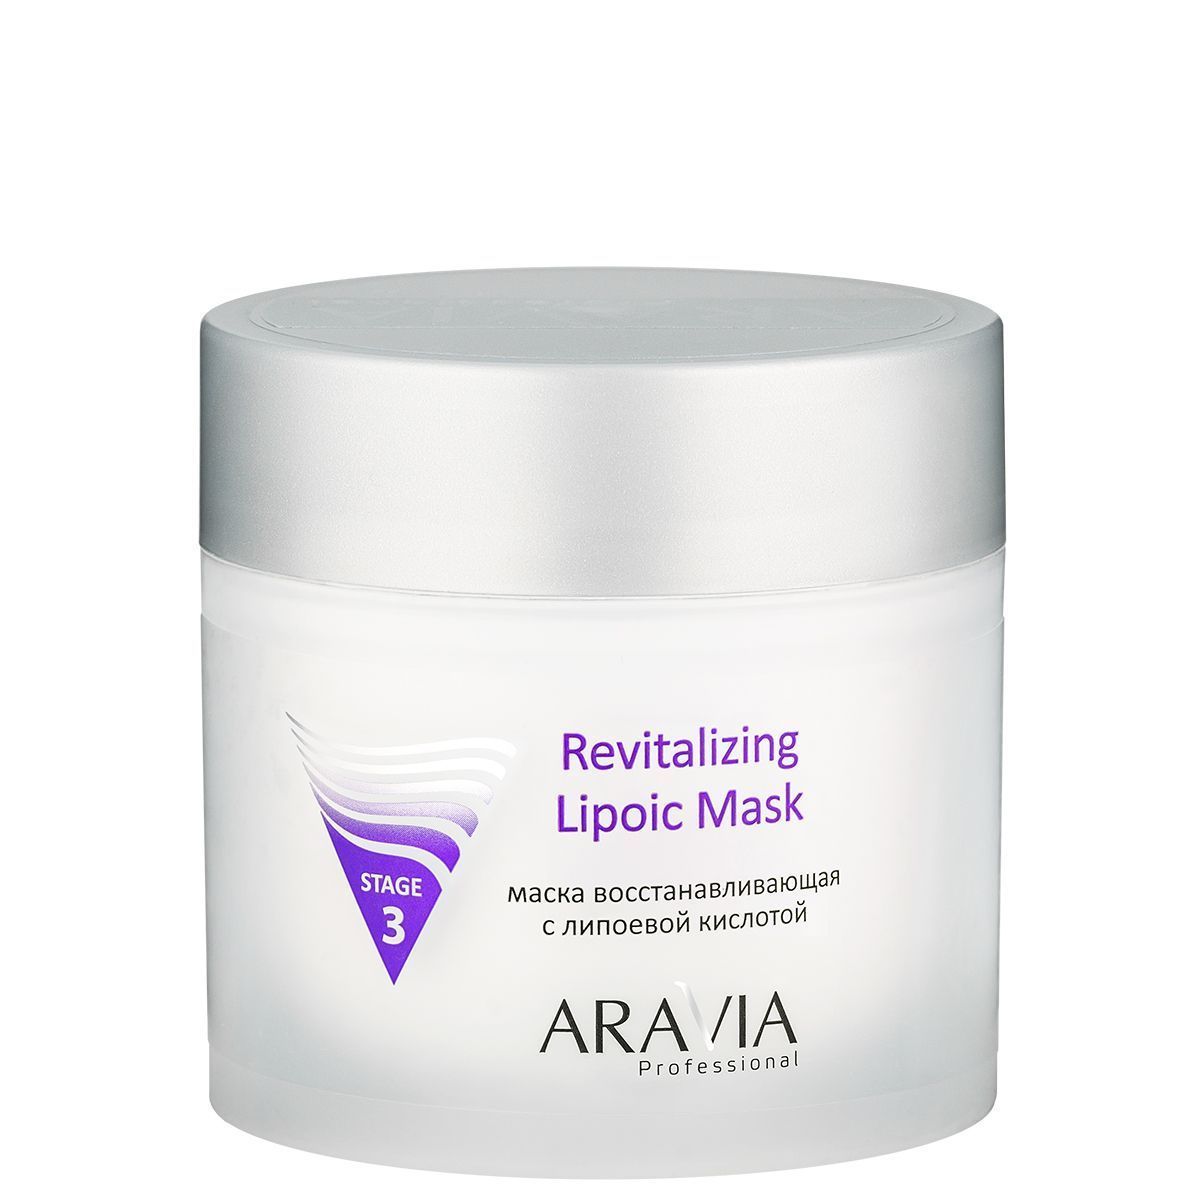 Aravia Professional Маска восстанавливающая с липоевой кислотой Revitalizing Lipoic Mask, 300мл